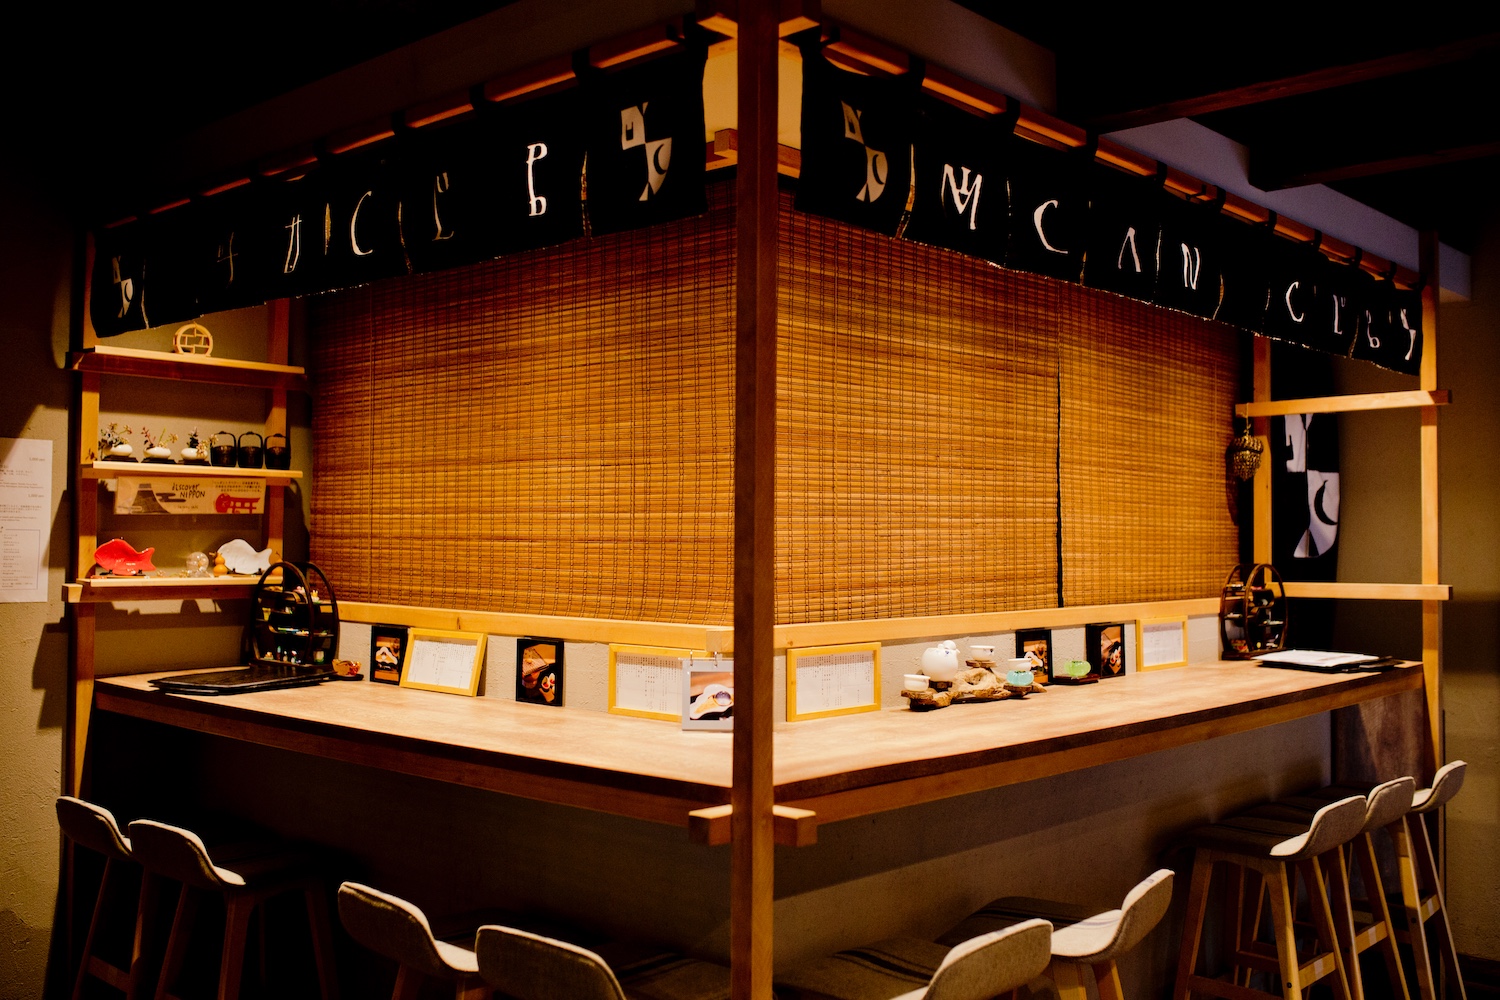 Cafés Tokyo breakfast places coffee shops_01_urasando-garden 裏参道ガーデン